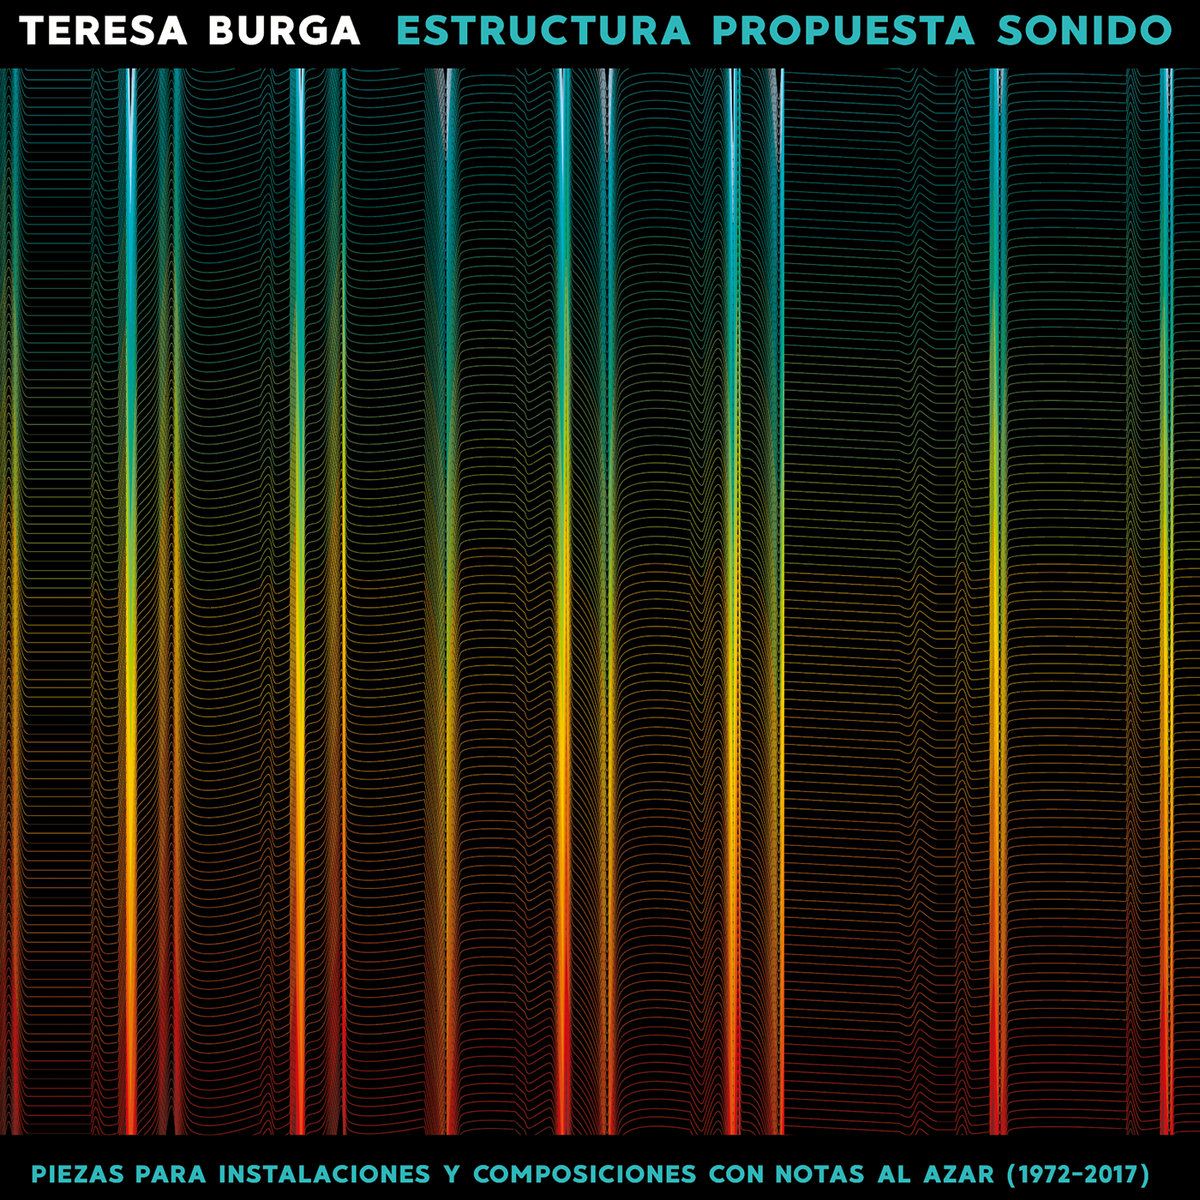 TERESA BURGA / ESTRUCTURA PROPUESTA SONIDO:PIEZAS PARA INSTALACIONES Y COMPOSICIONES CON NOTAS AL AZAR (1972-2017)